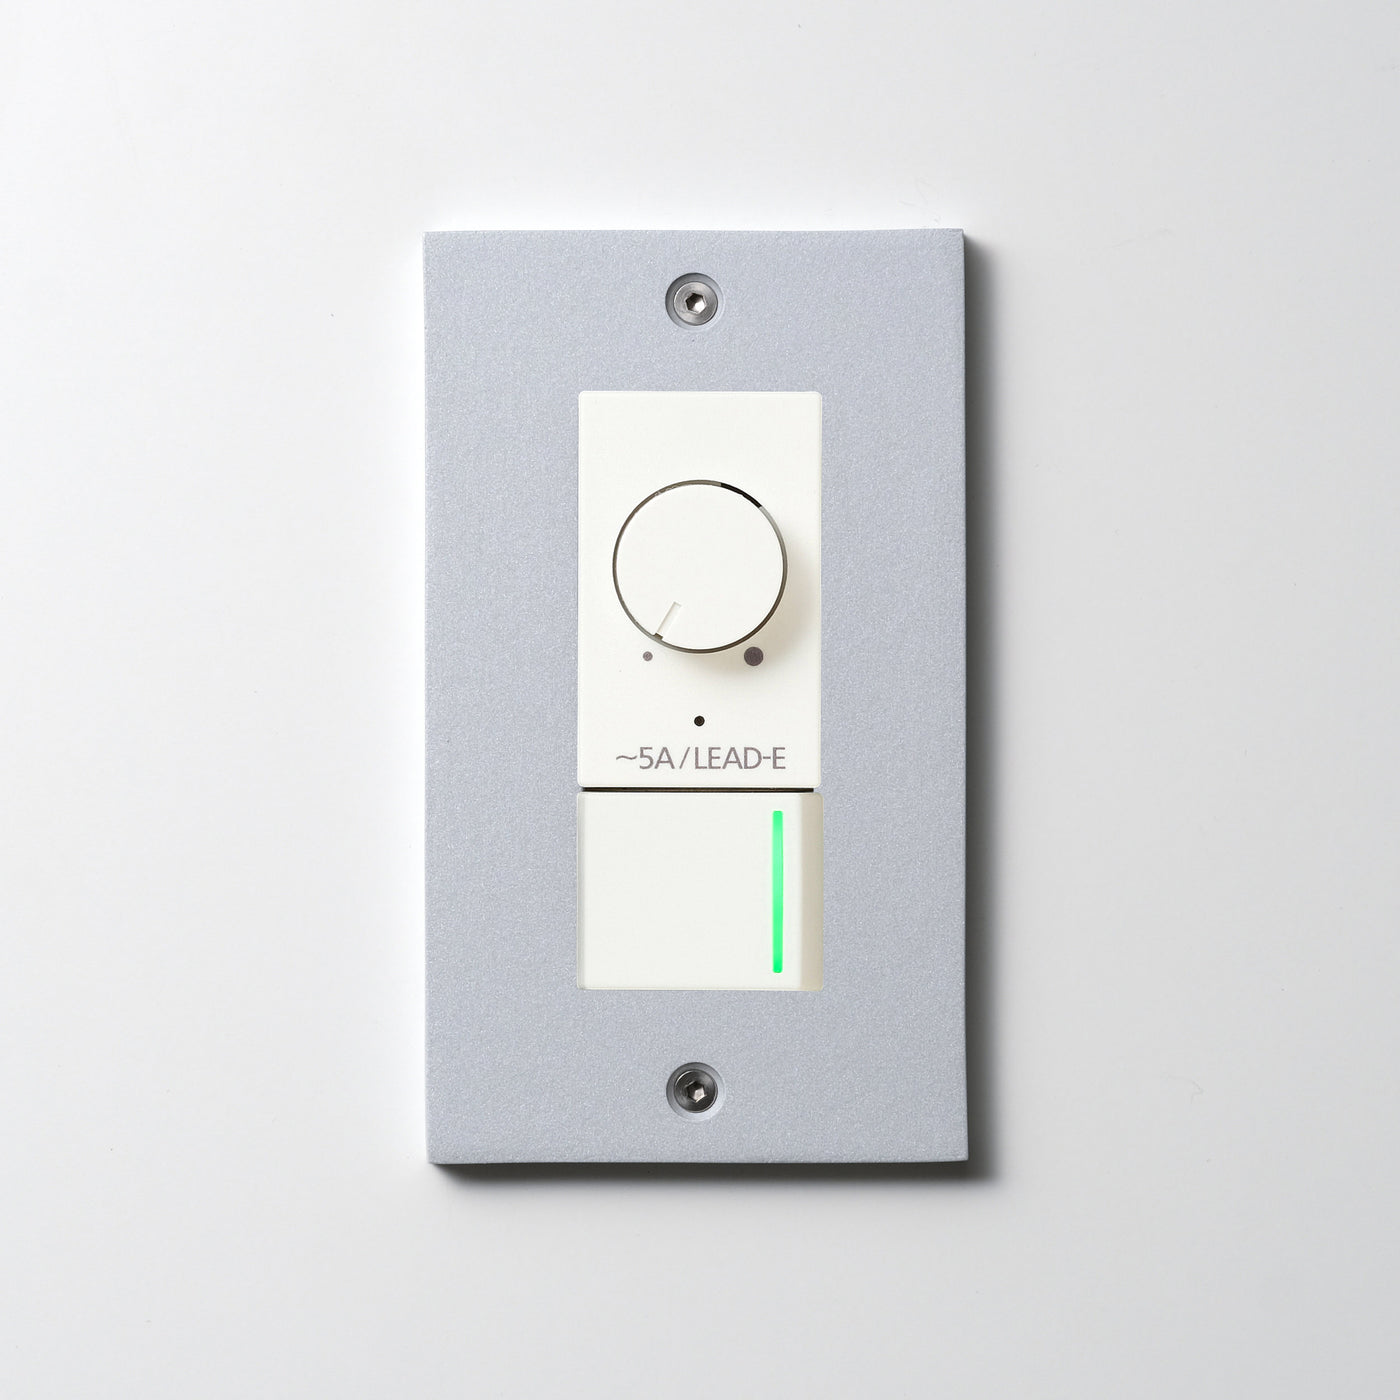 アルミダイキャスト（シルバー）プレート <br>+ NK 正位相制御方式ライトコントロール＋片切、3路ガイドランプ（グリーン）スイッチ　 ホワイト